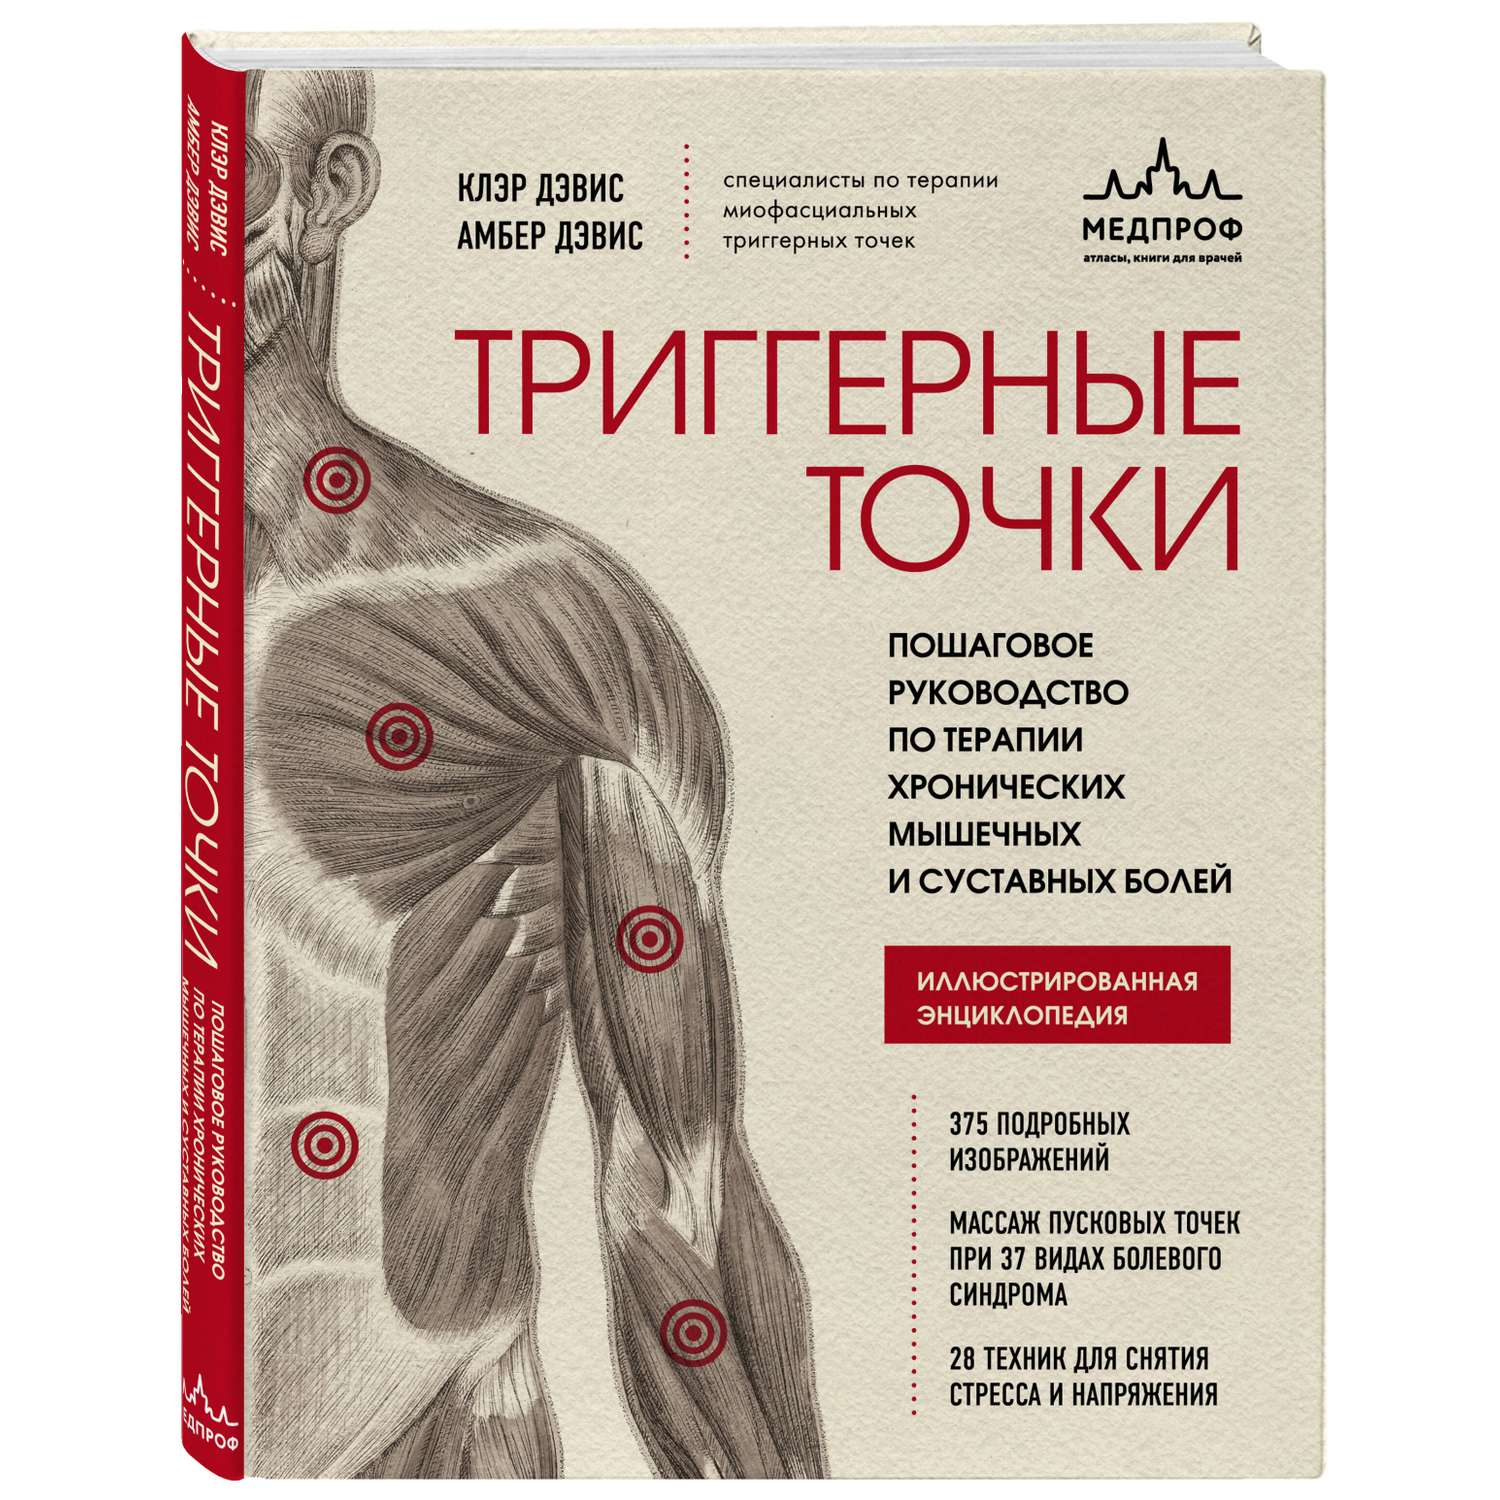 Книга Эксмо Триггерные точки Пошаговое руководство по терапии хронических мышечных и суставных болей - фото 1